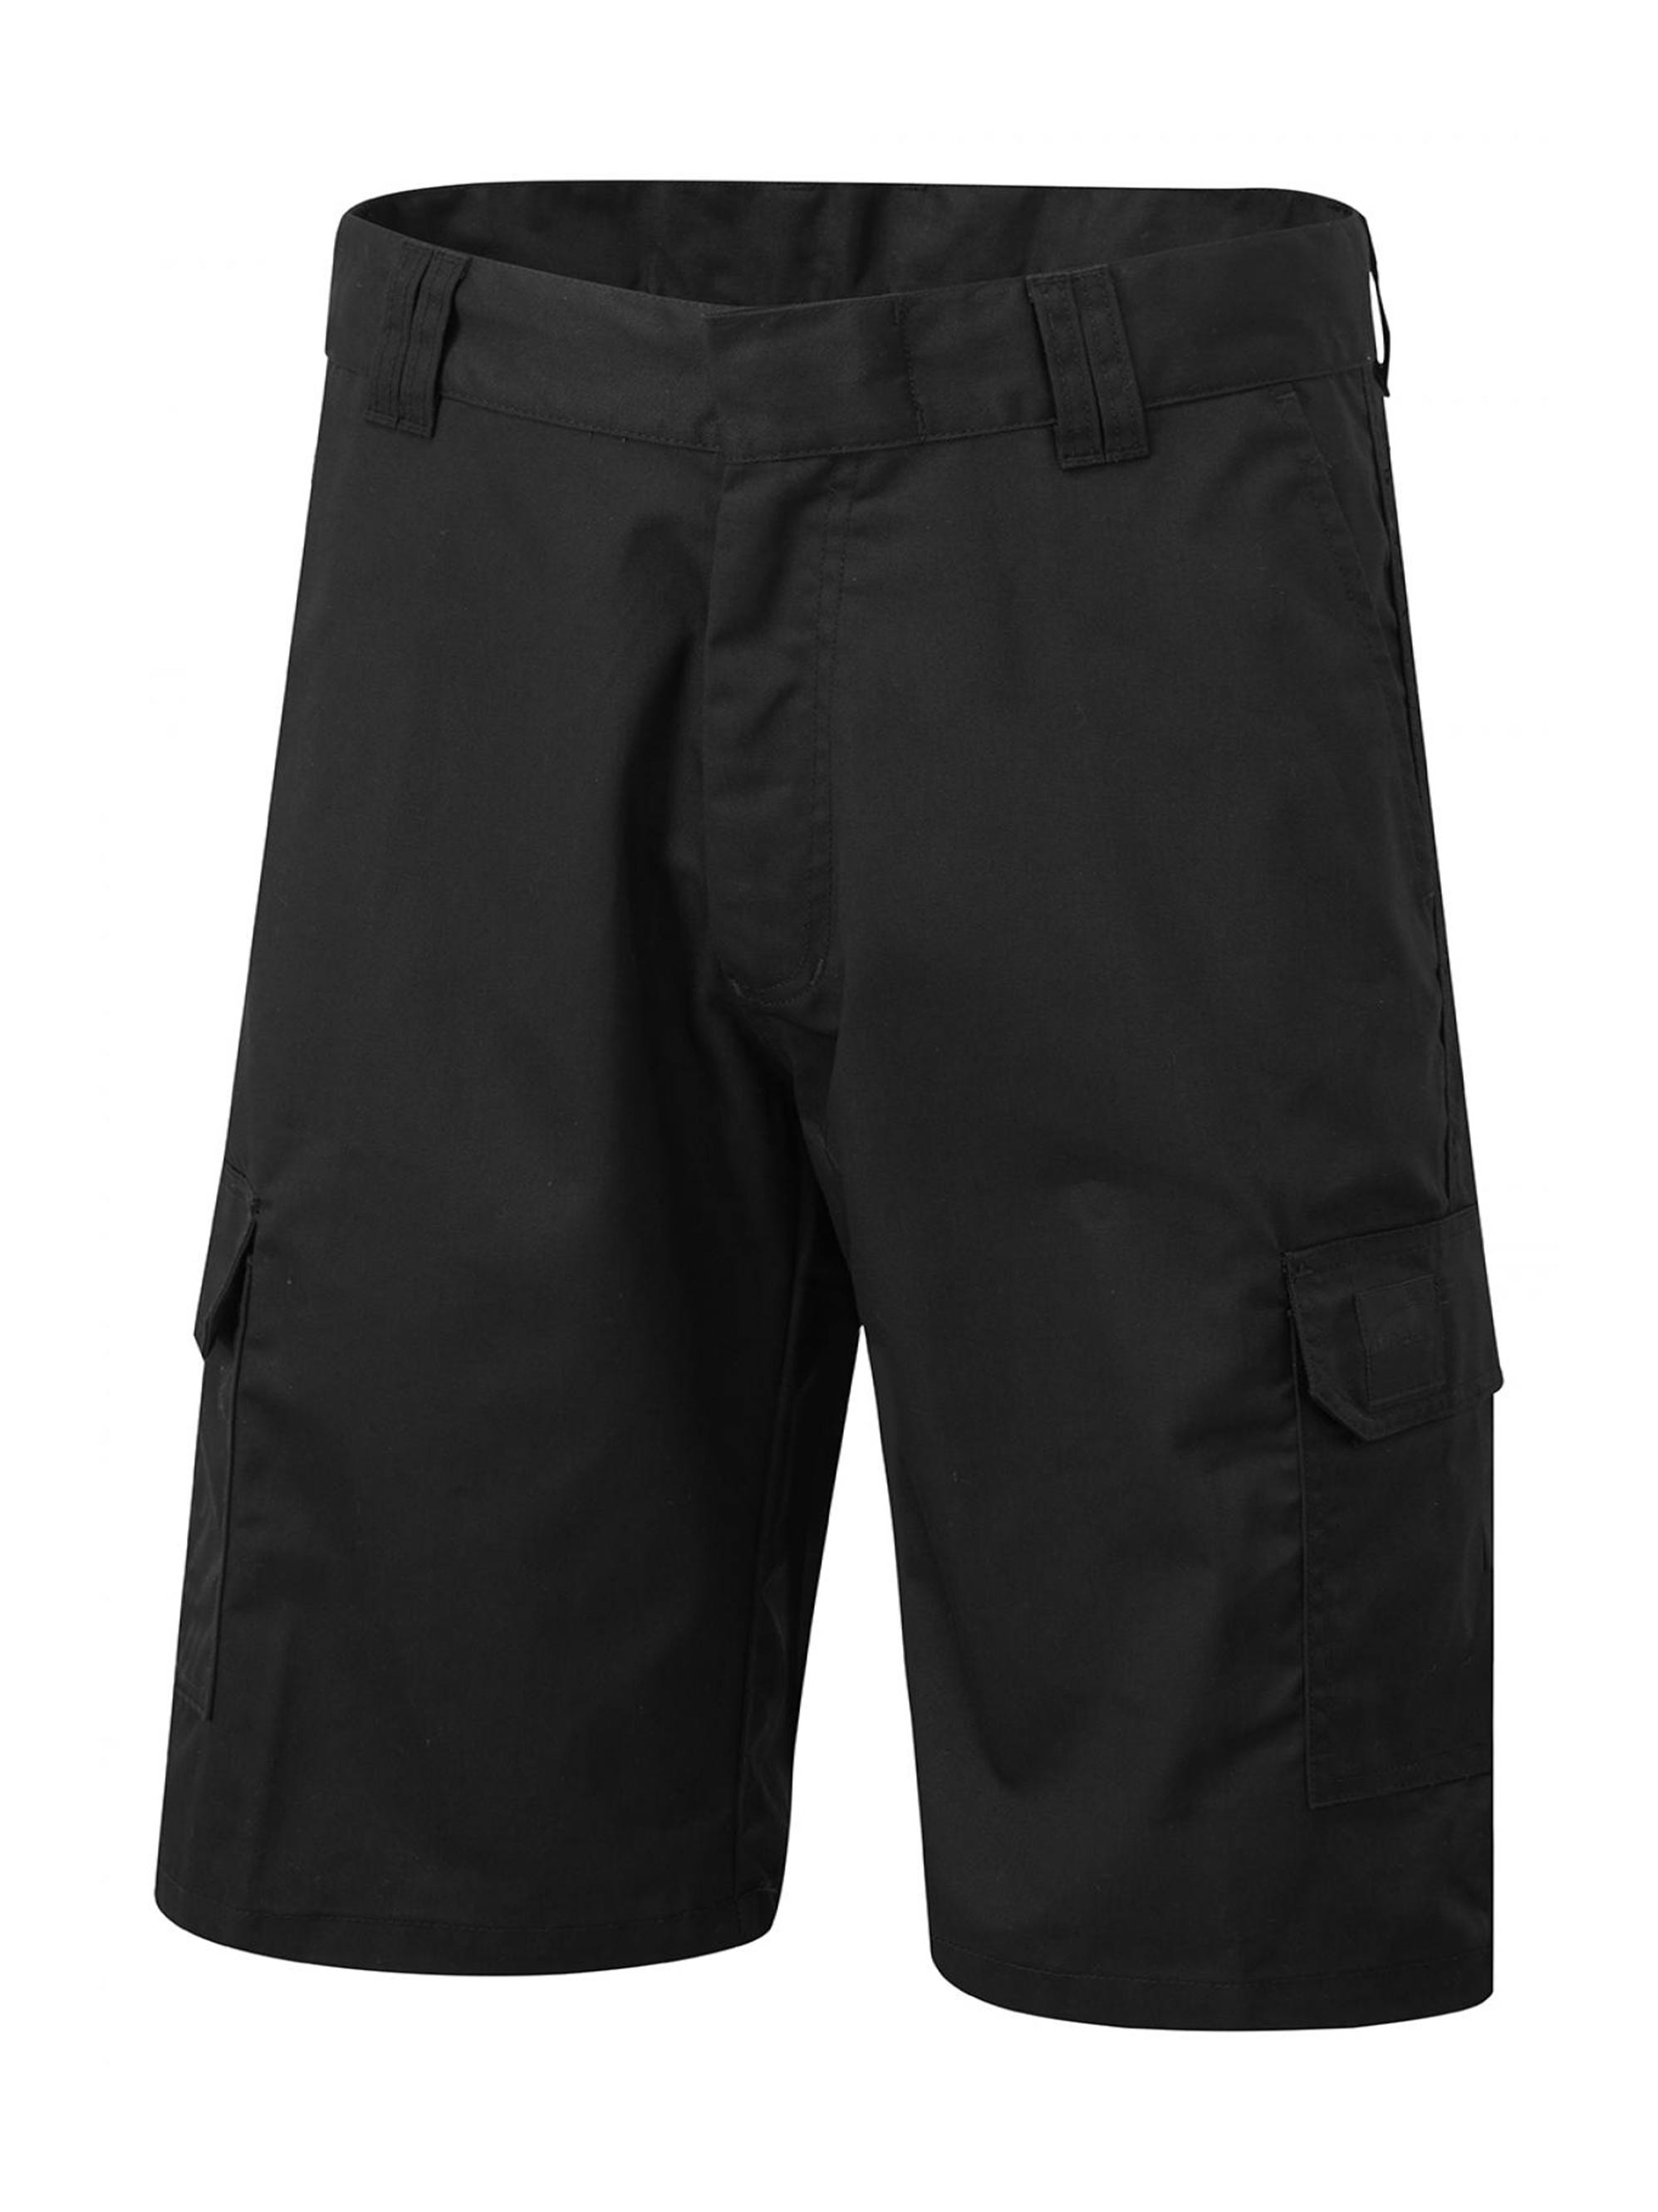 Uneek Menís Cargo Shorts UC907 - Black